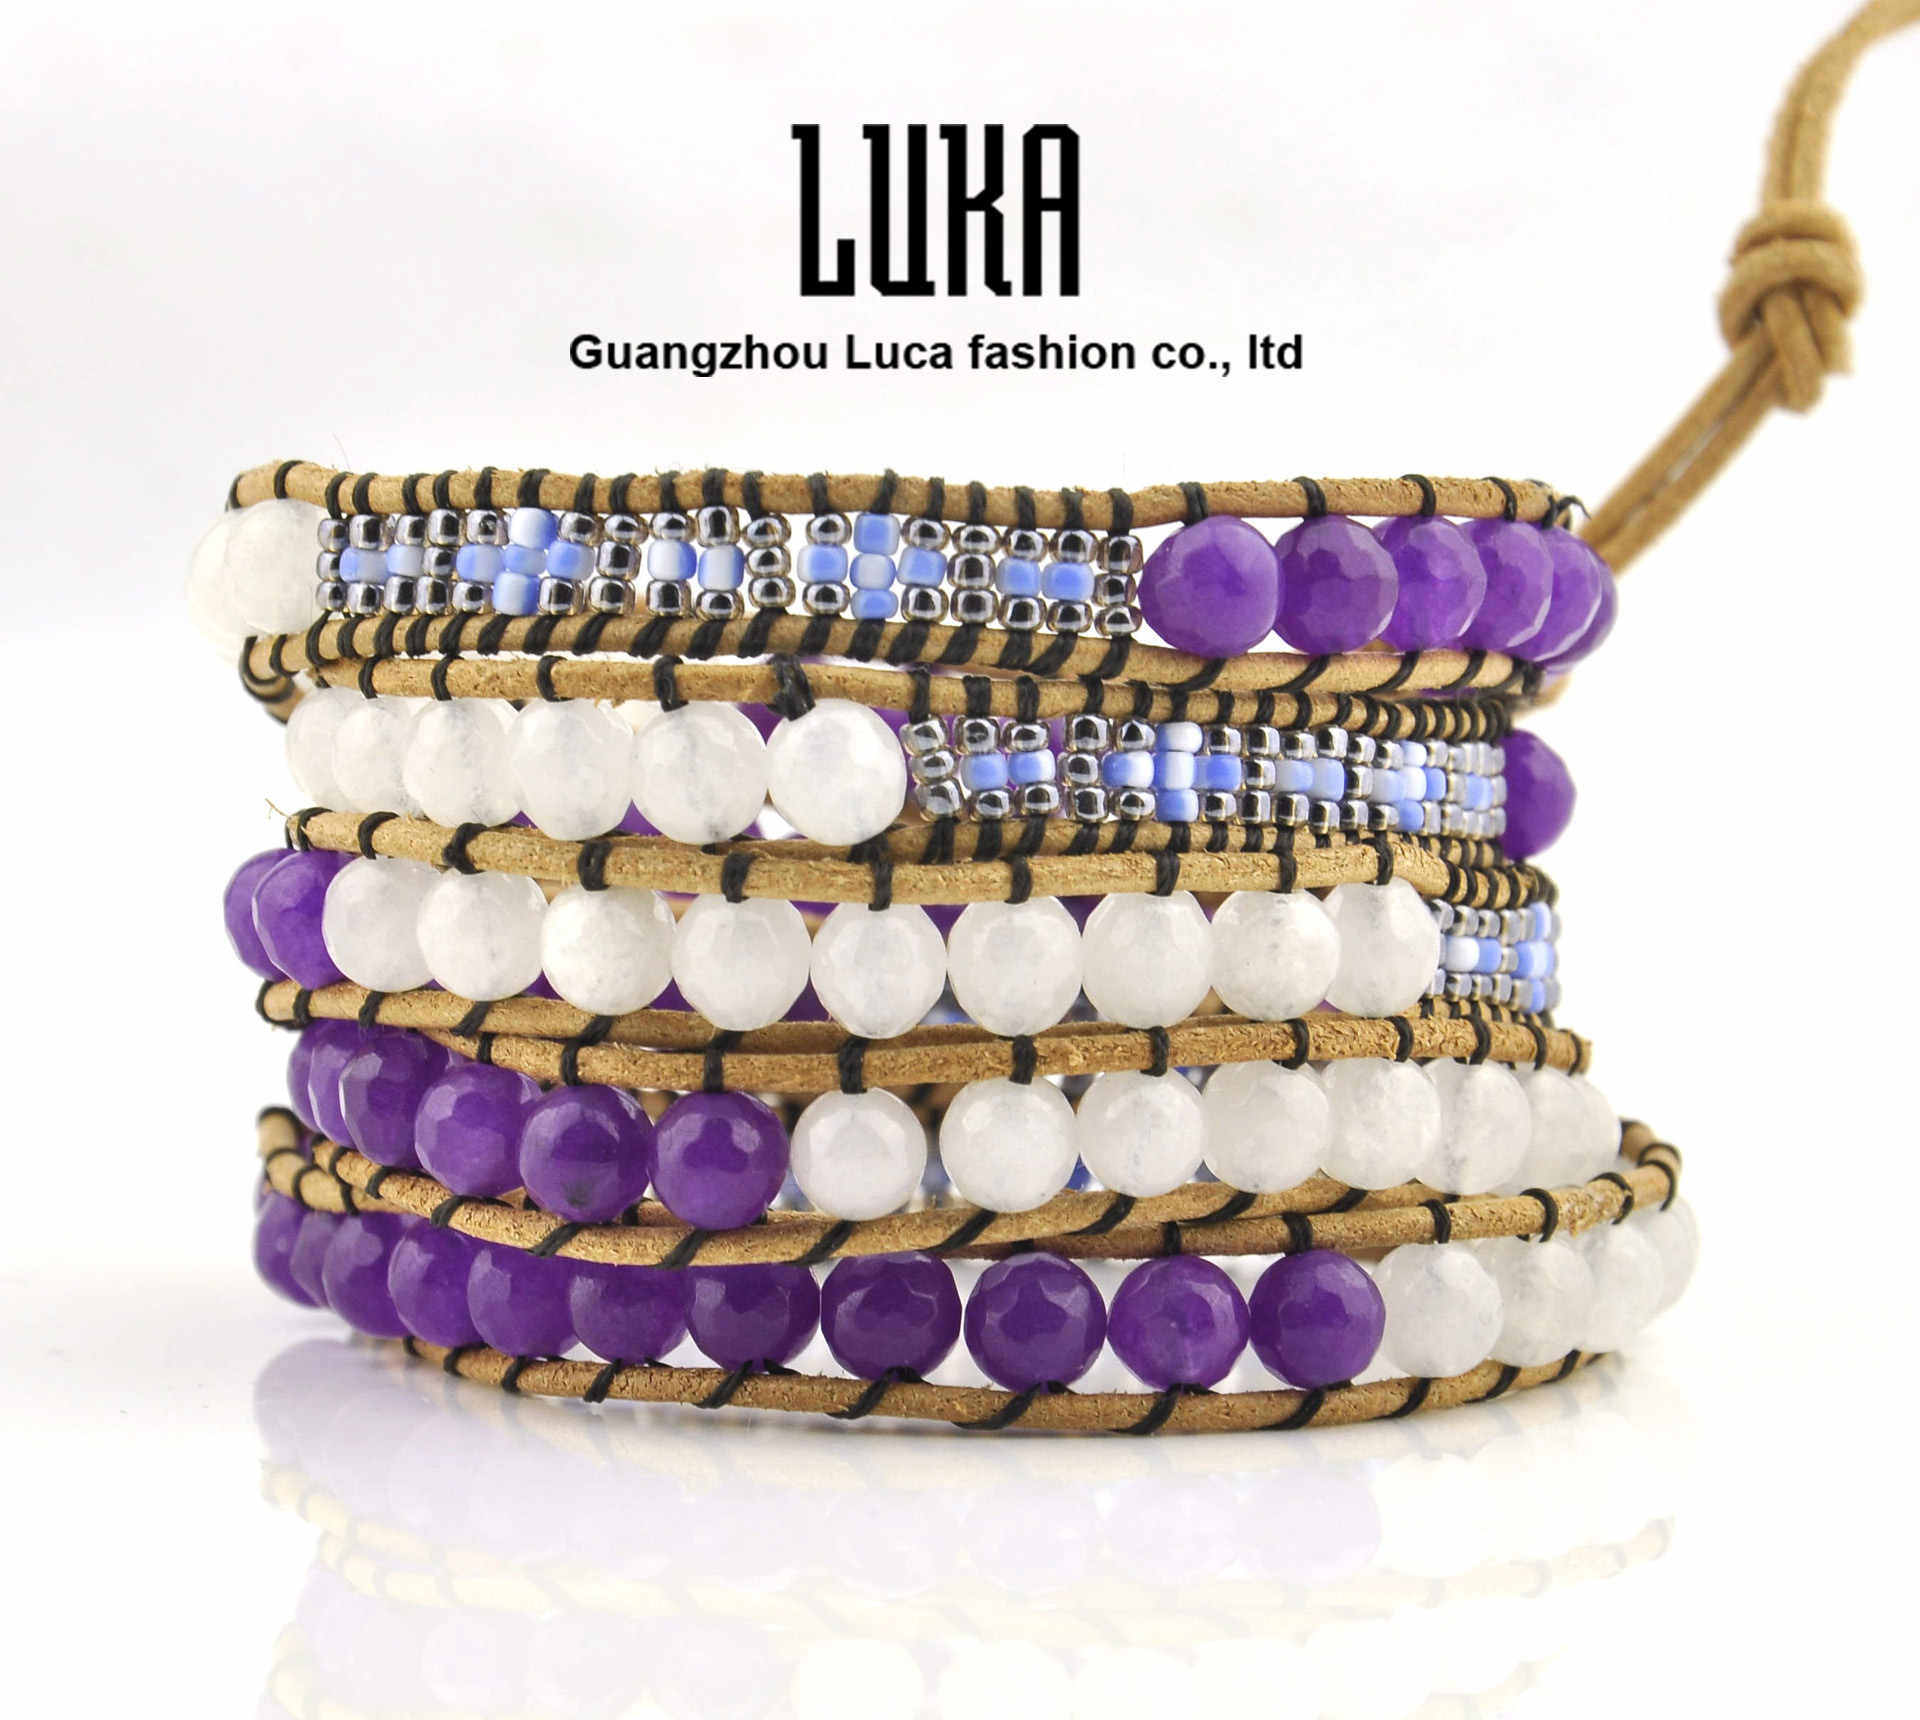 5 Strands Hand Made Bracelet Made of Beads